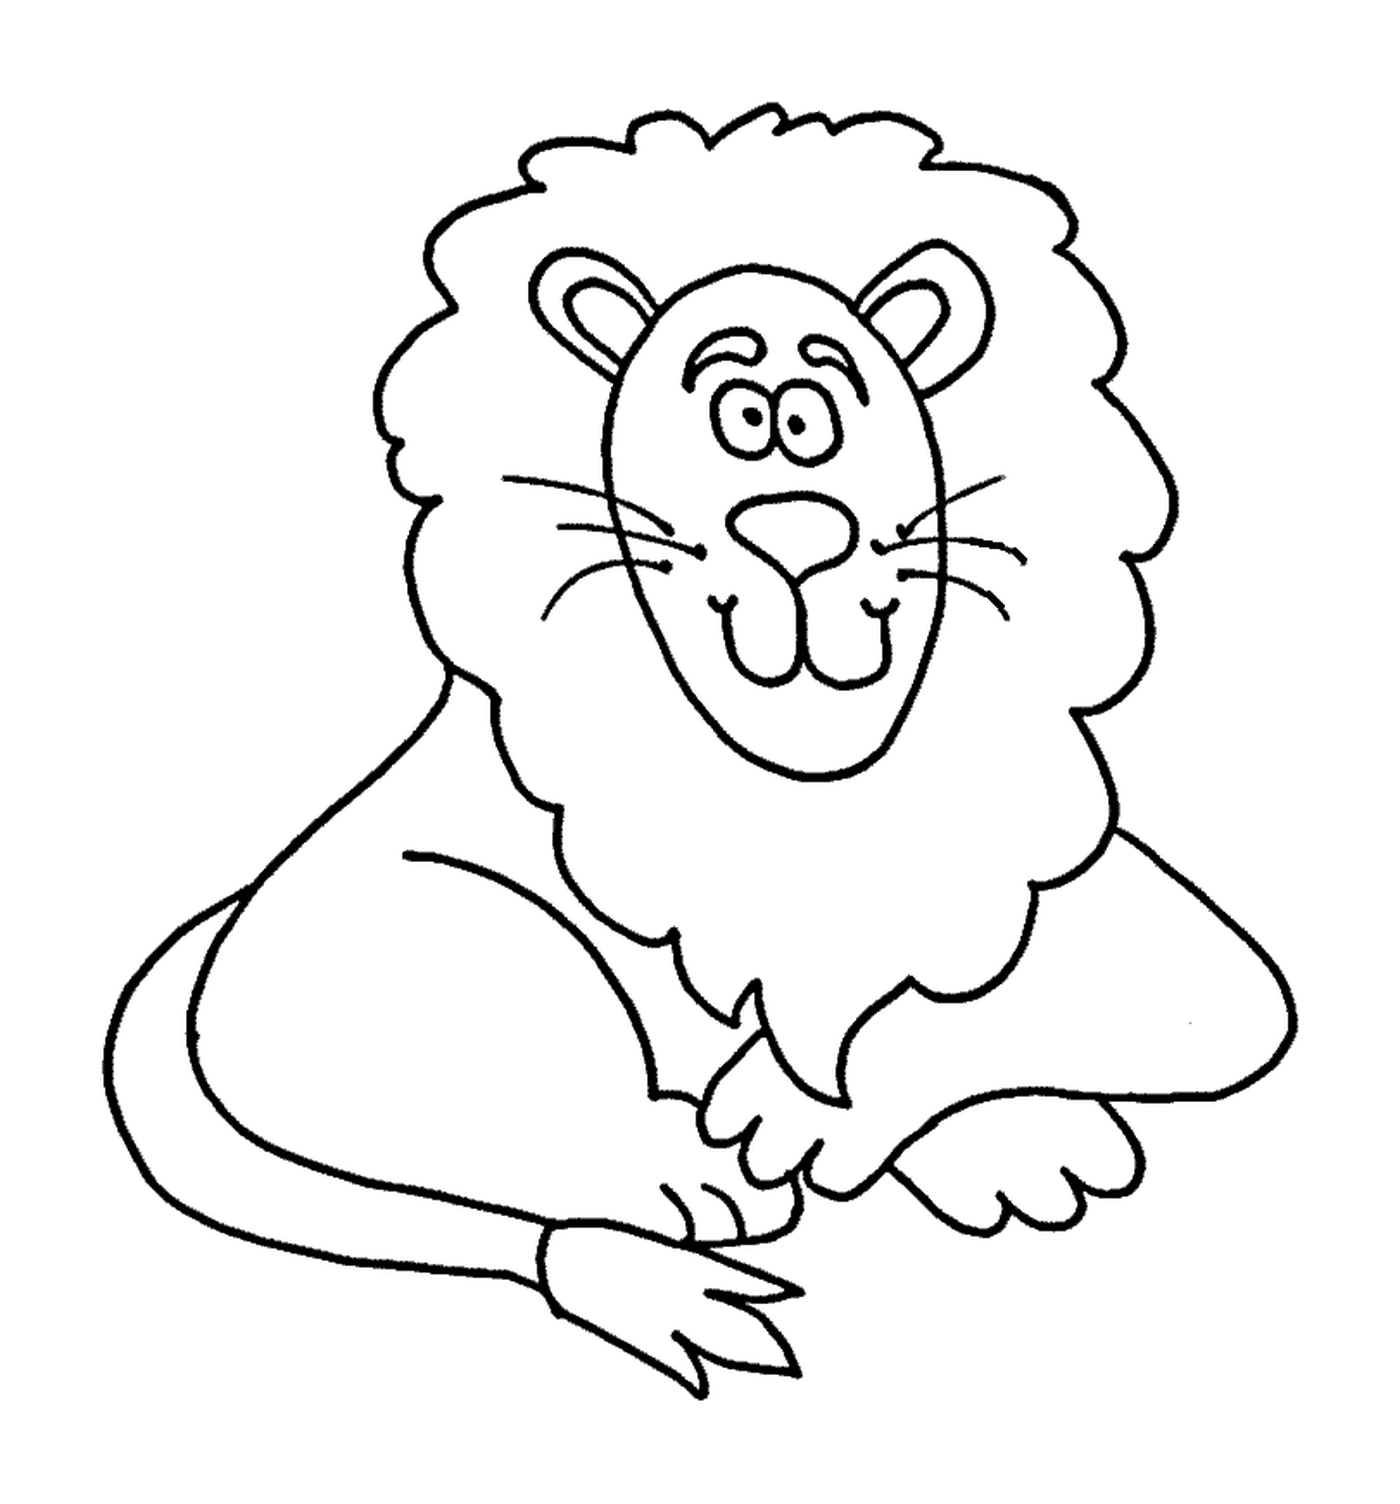  Criança dos desenhos animados do leão, adorável 